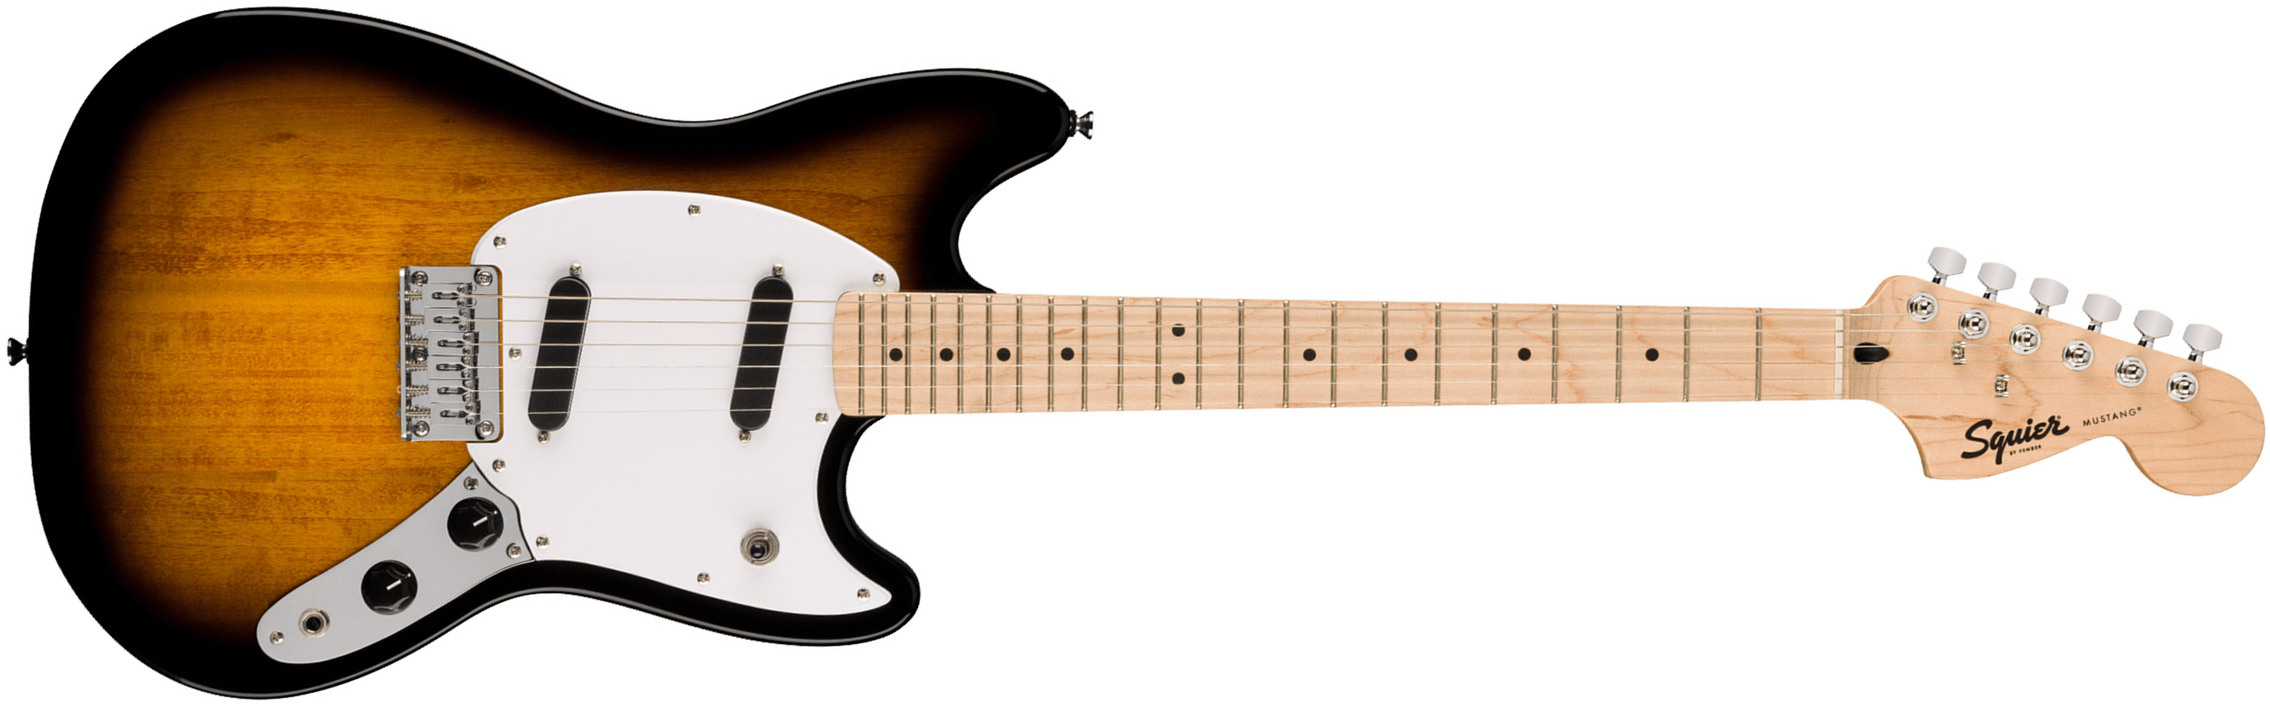 Squier Mustang Sonic 2s Ht Mn - 2-color Sunburst - Retro-rock elektrische gitaar - Main picture